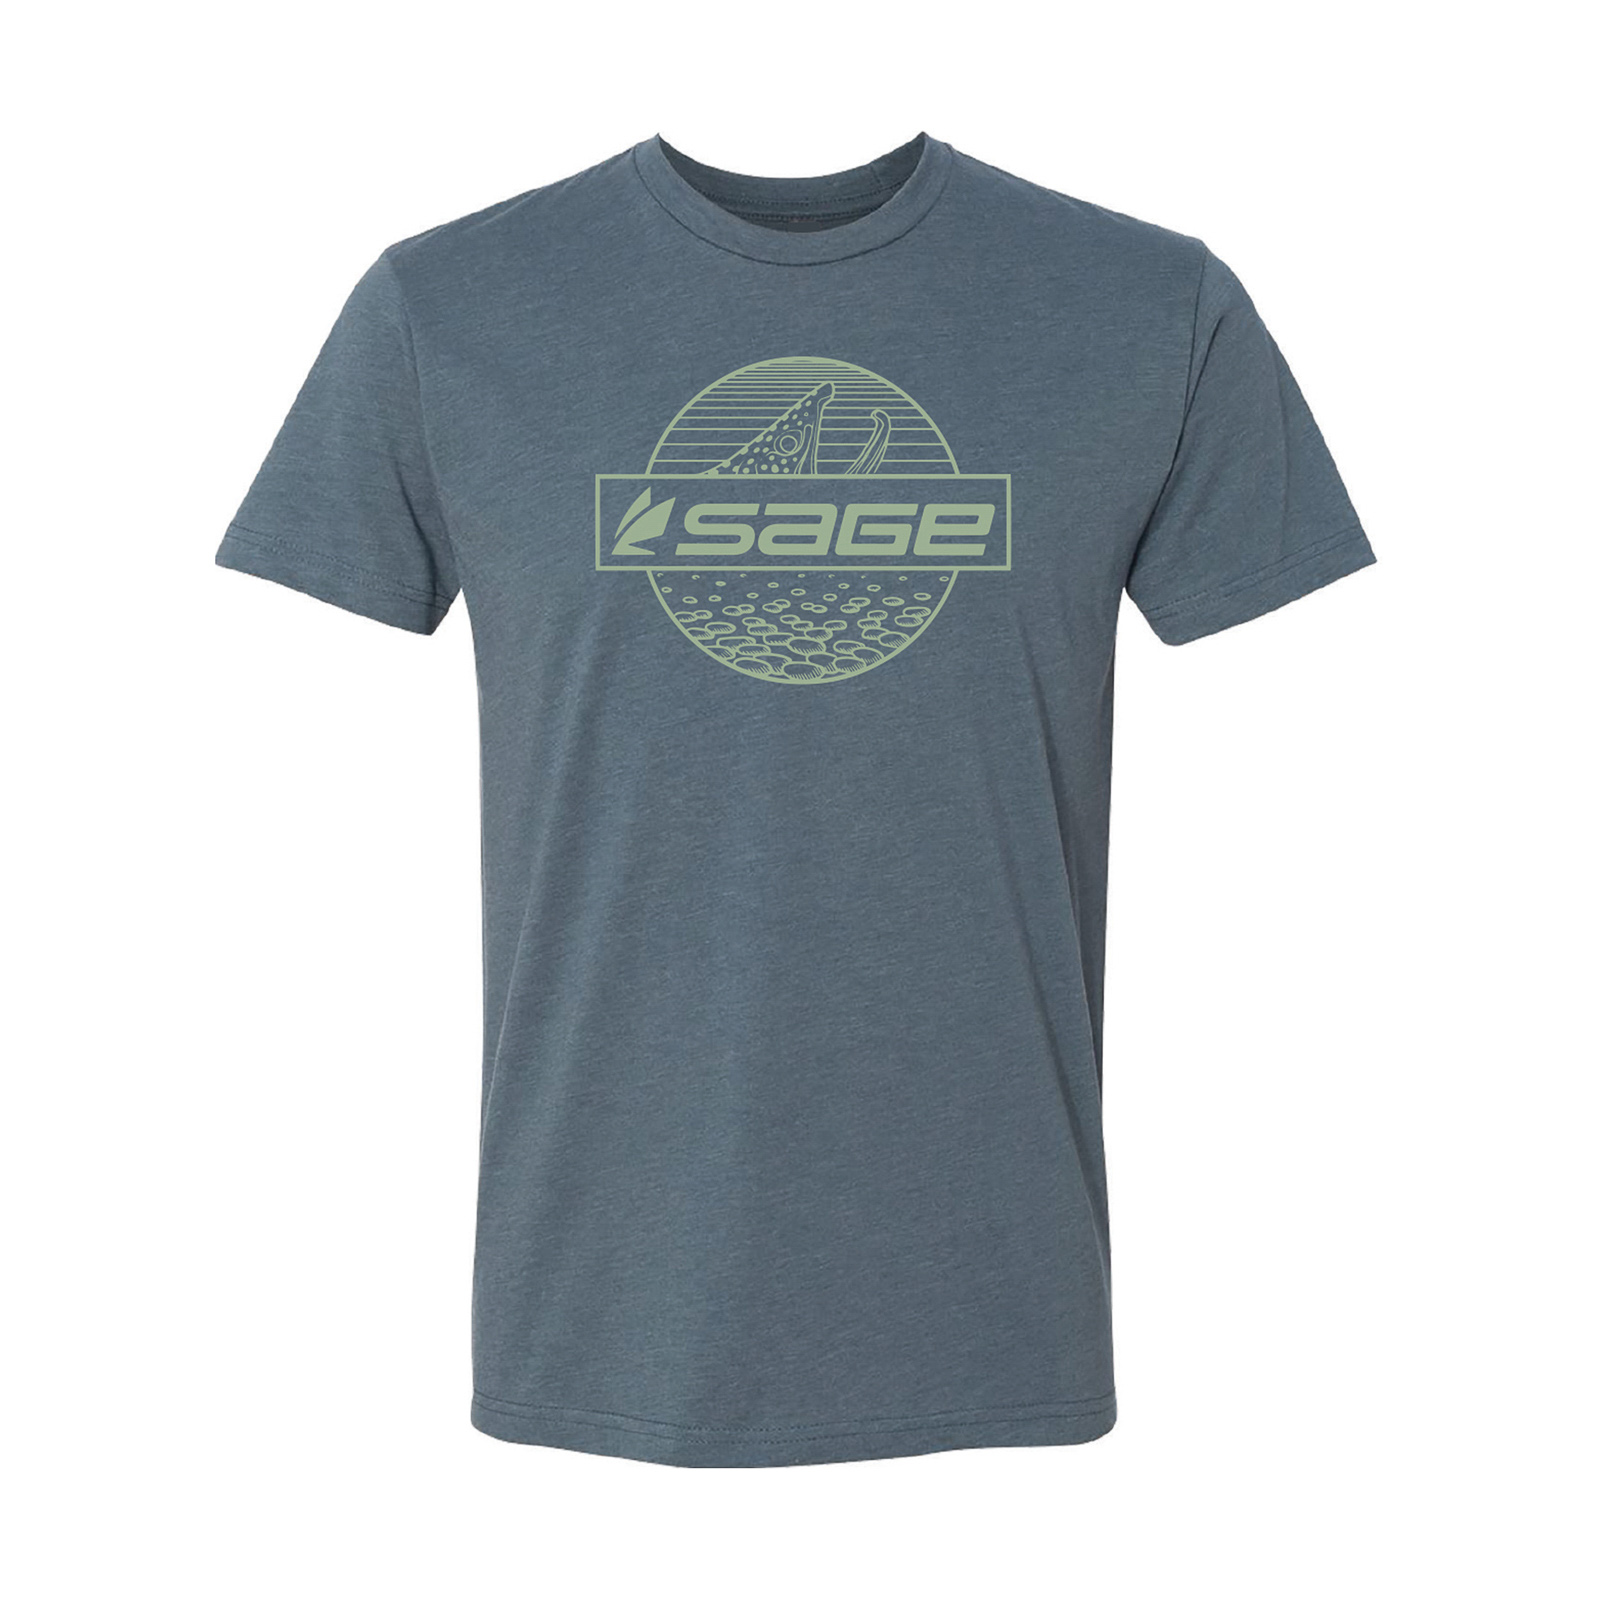 Sage Rising Brown T-Shirt – Guide Flyfishing, Fly Fishing Rods, Reels, Sage, Redington, RIO